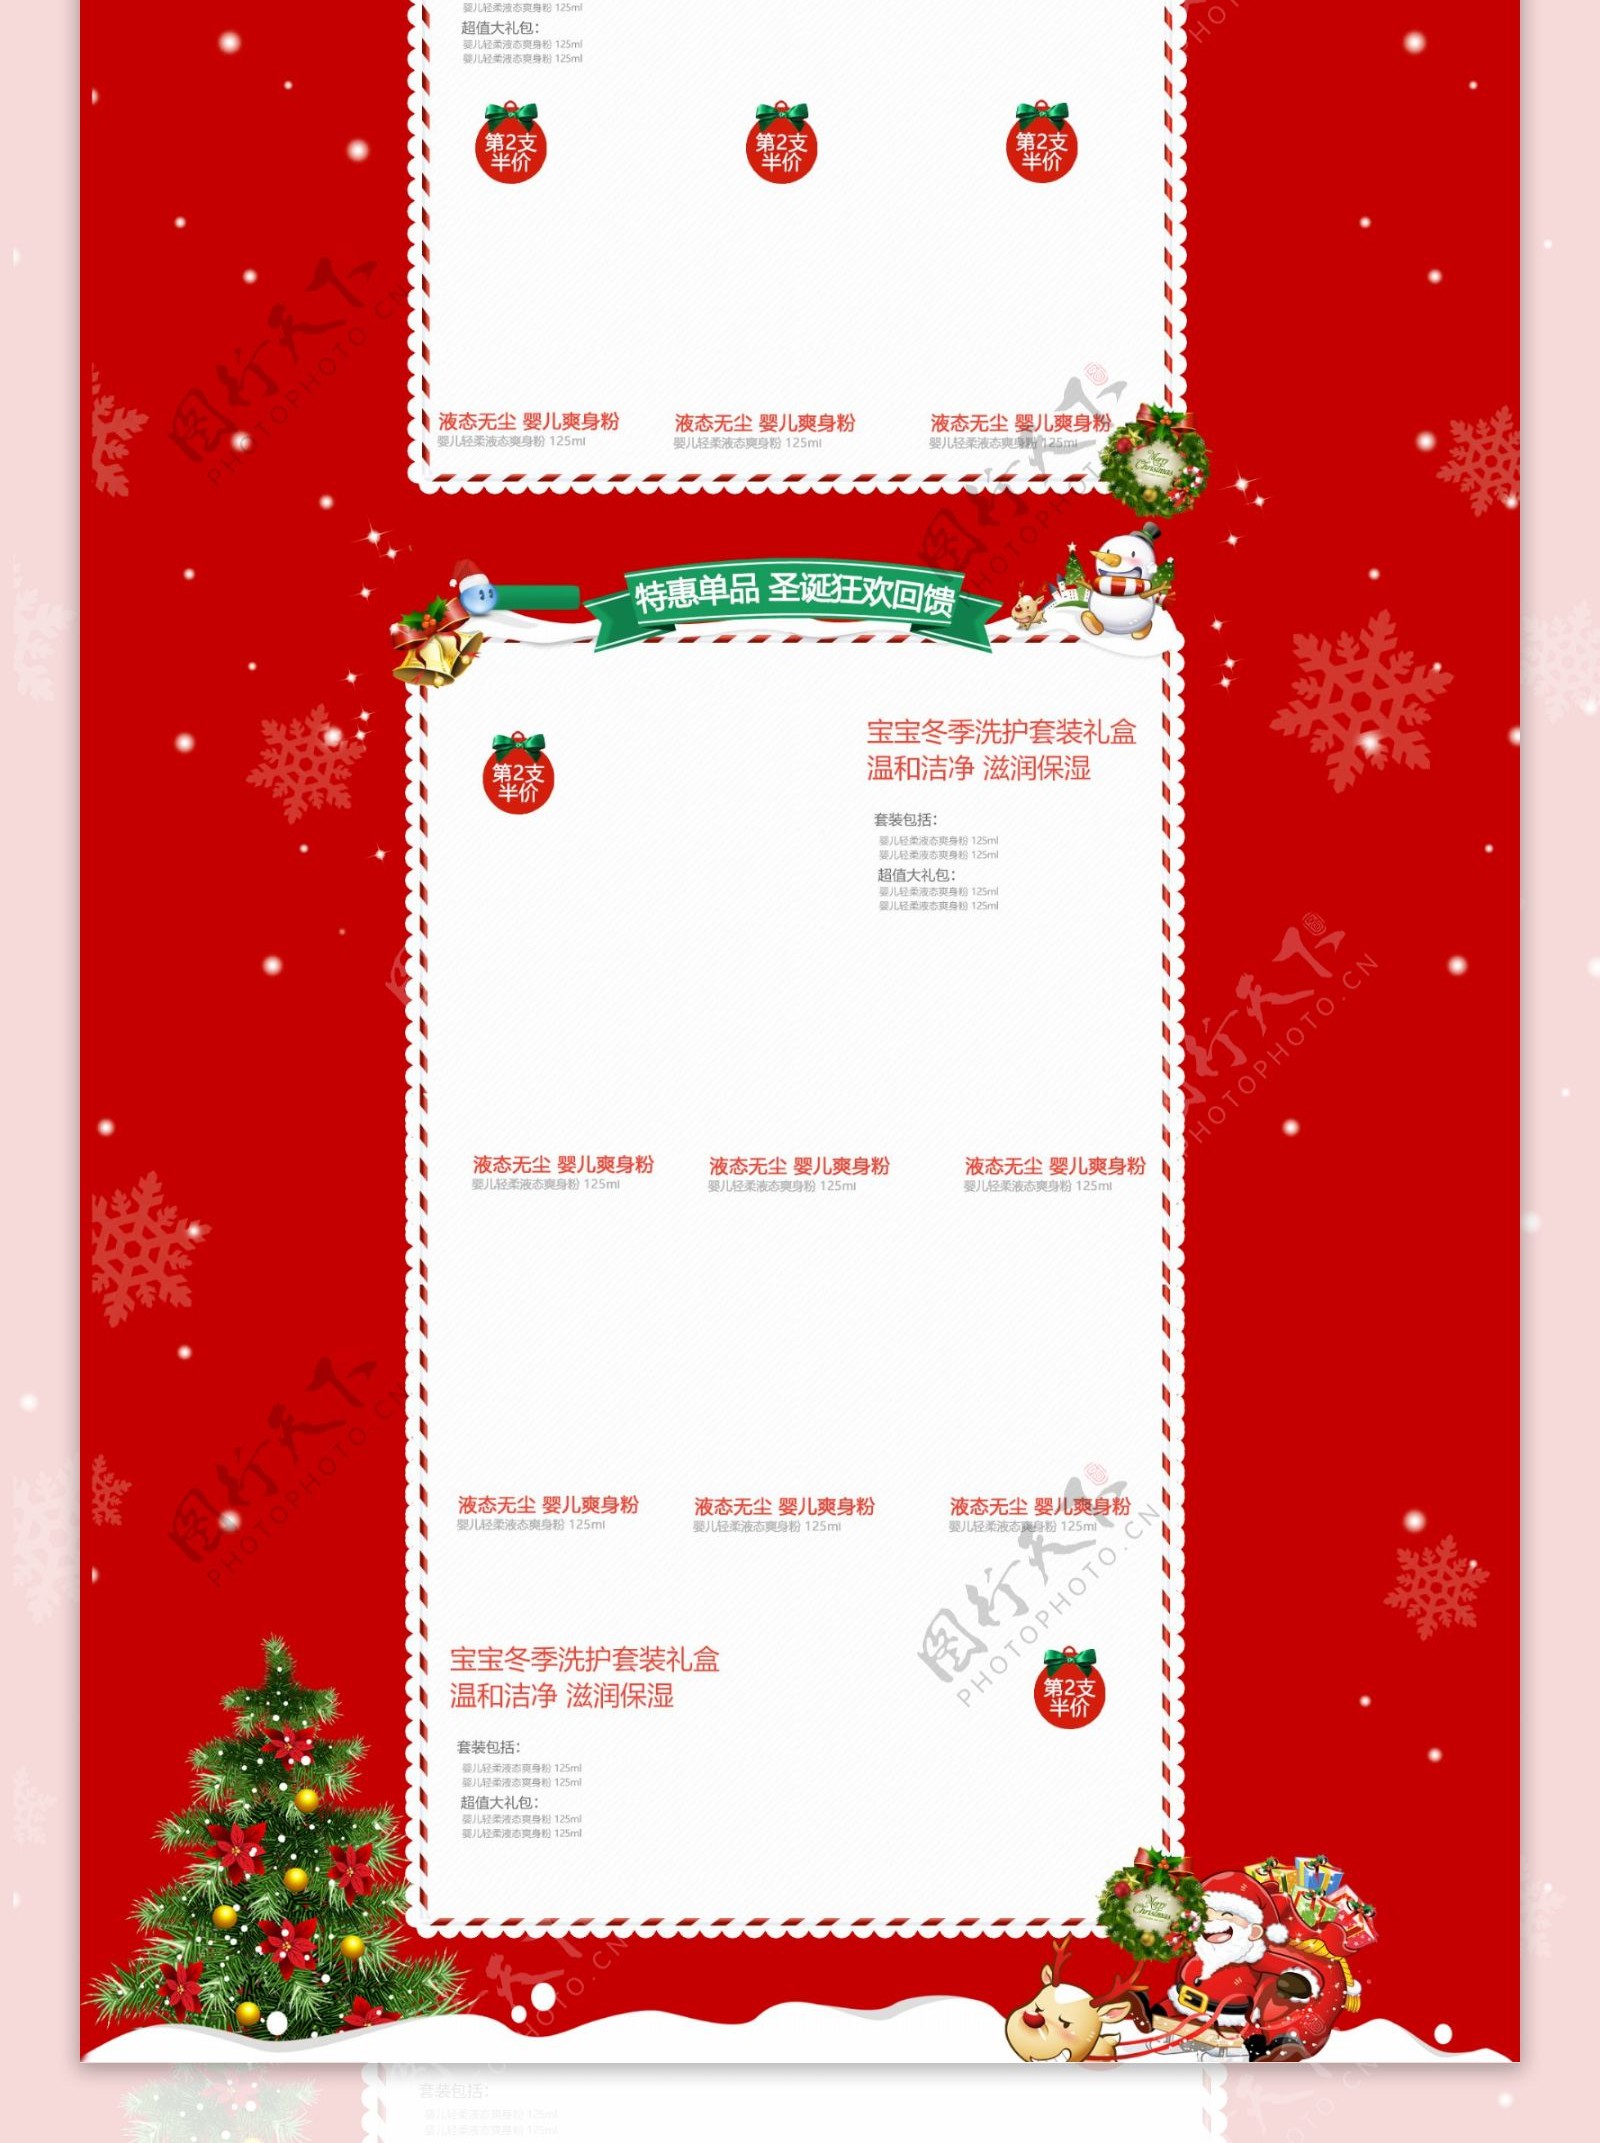 天猫淘宝唯美清新电商促销圣诞节首页模板